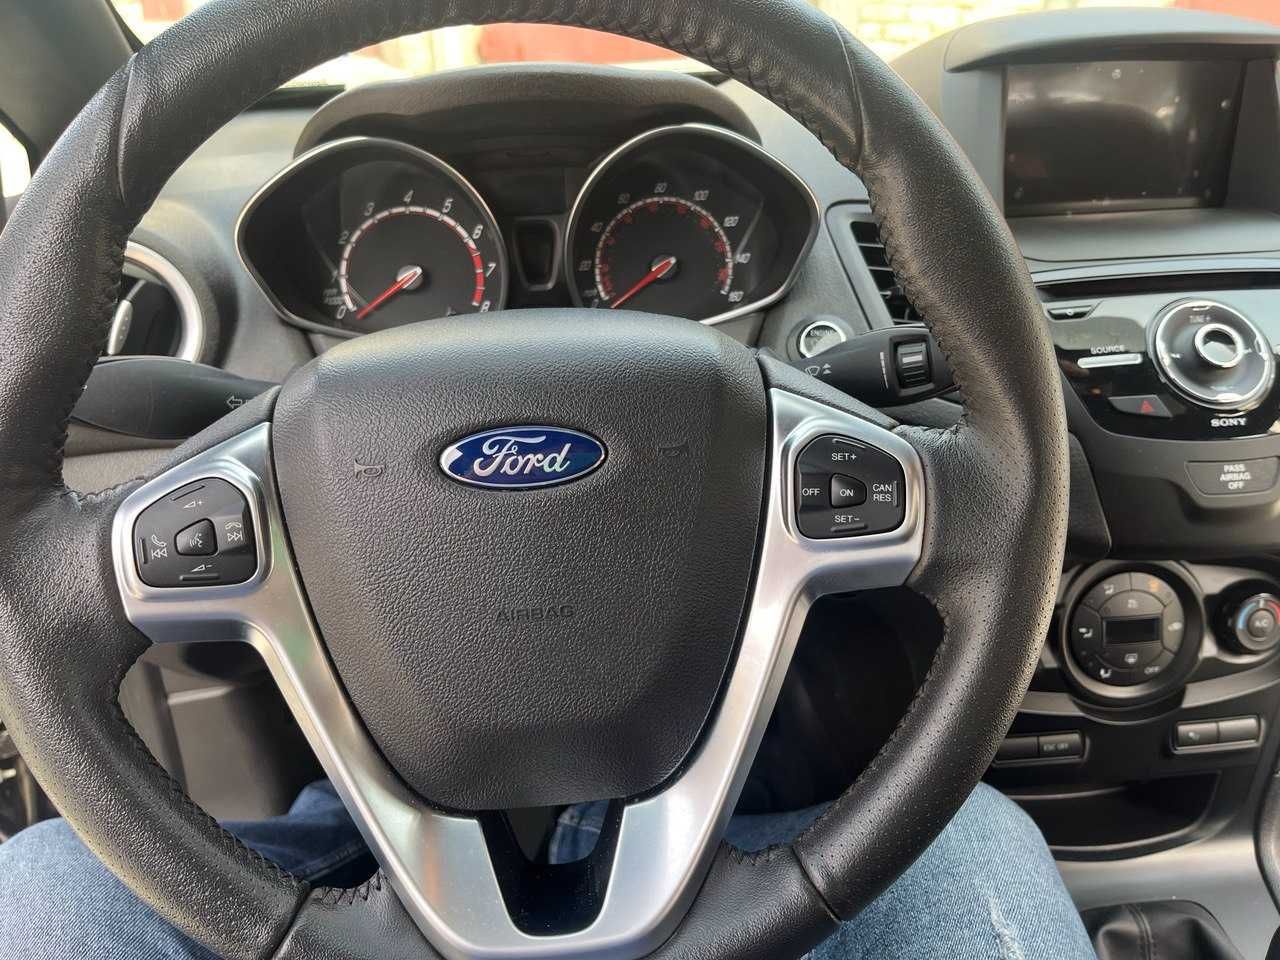 Ford Fiesta ST, 1.6 turbo